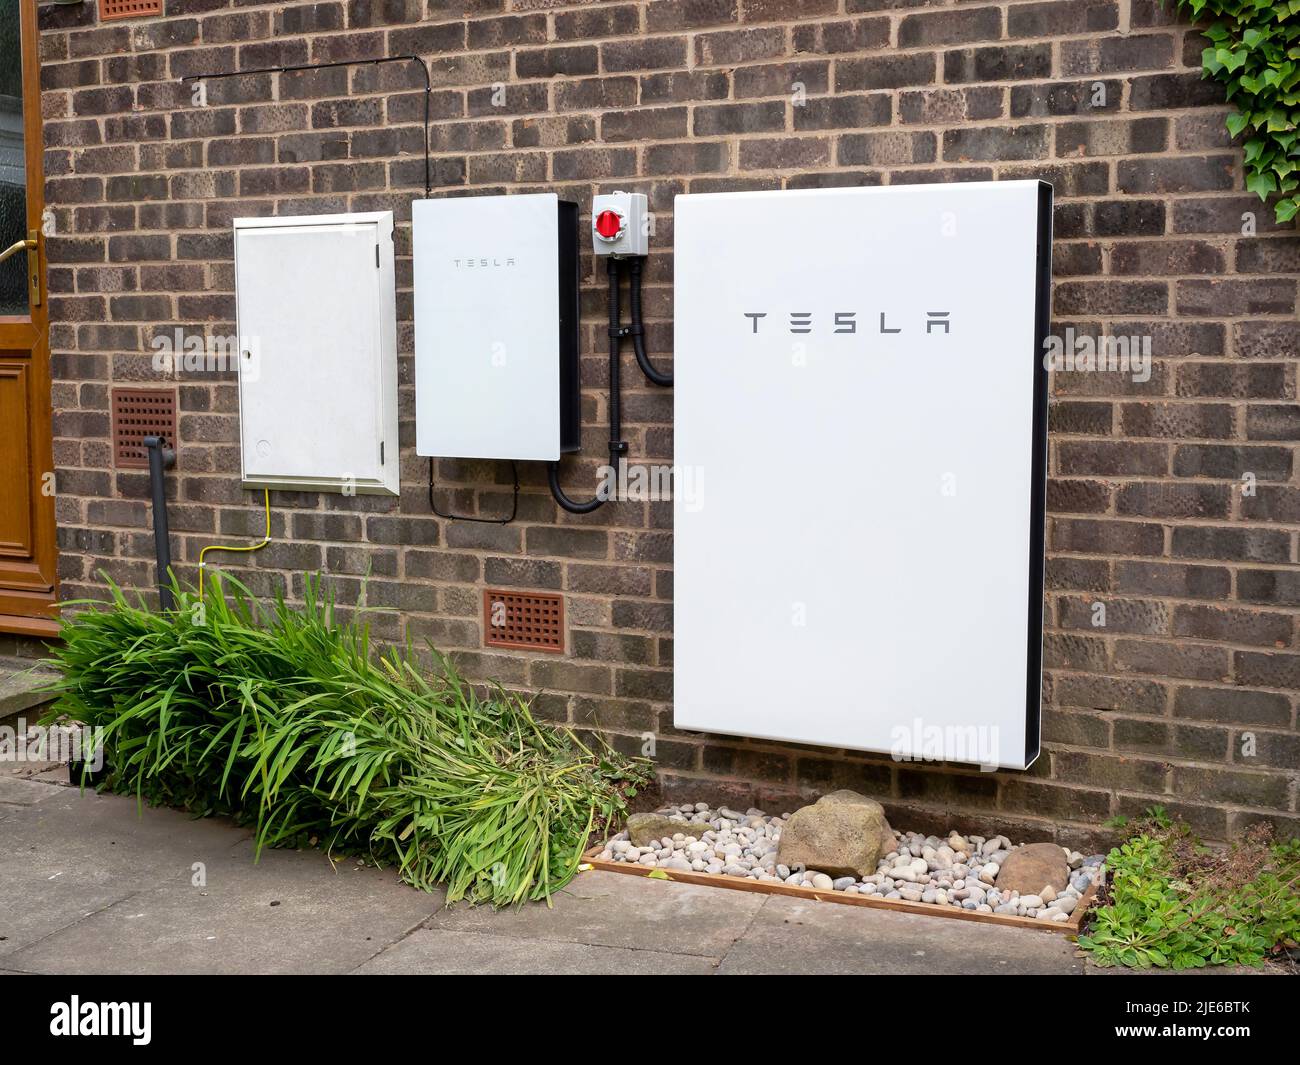 Sistema de almacenamiento de baterías Tesla Powerwall 2 y Backup Gateway 2 instalado en una pared de ladrillo Foto de stock